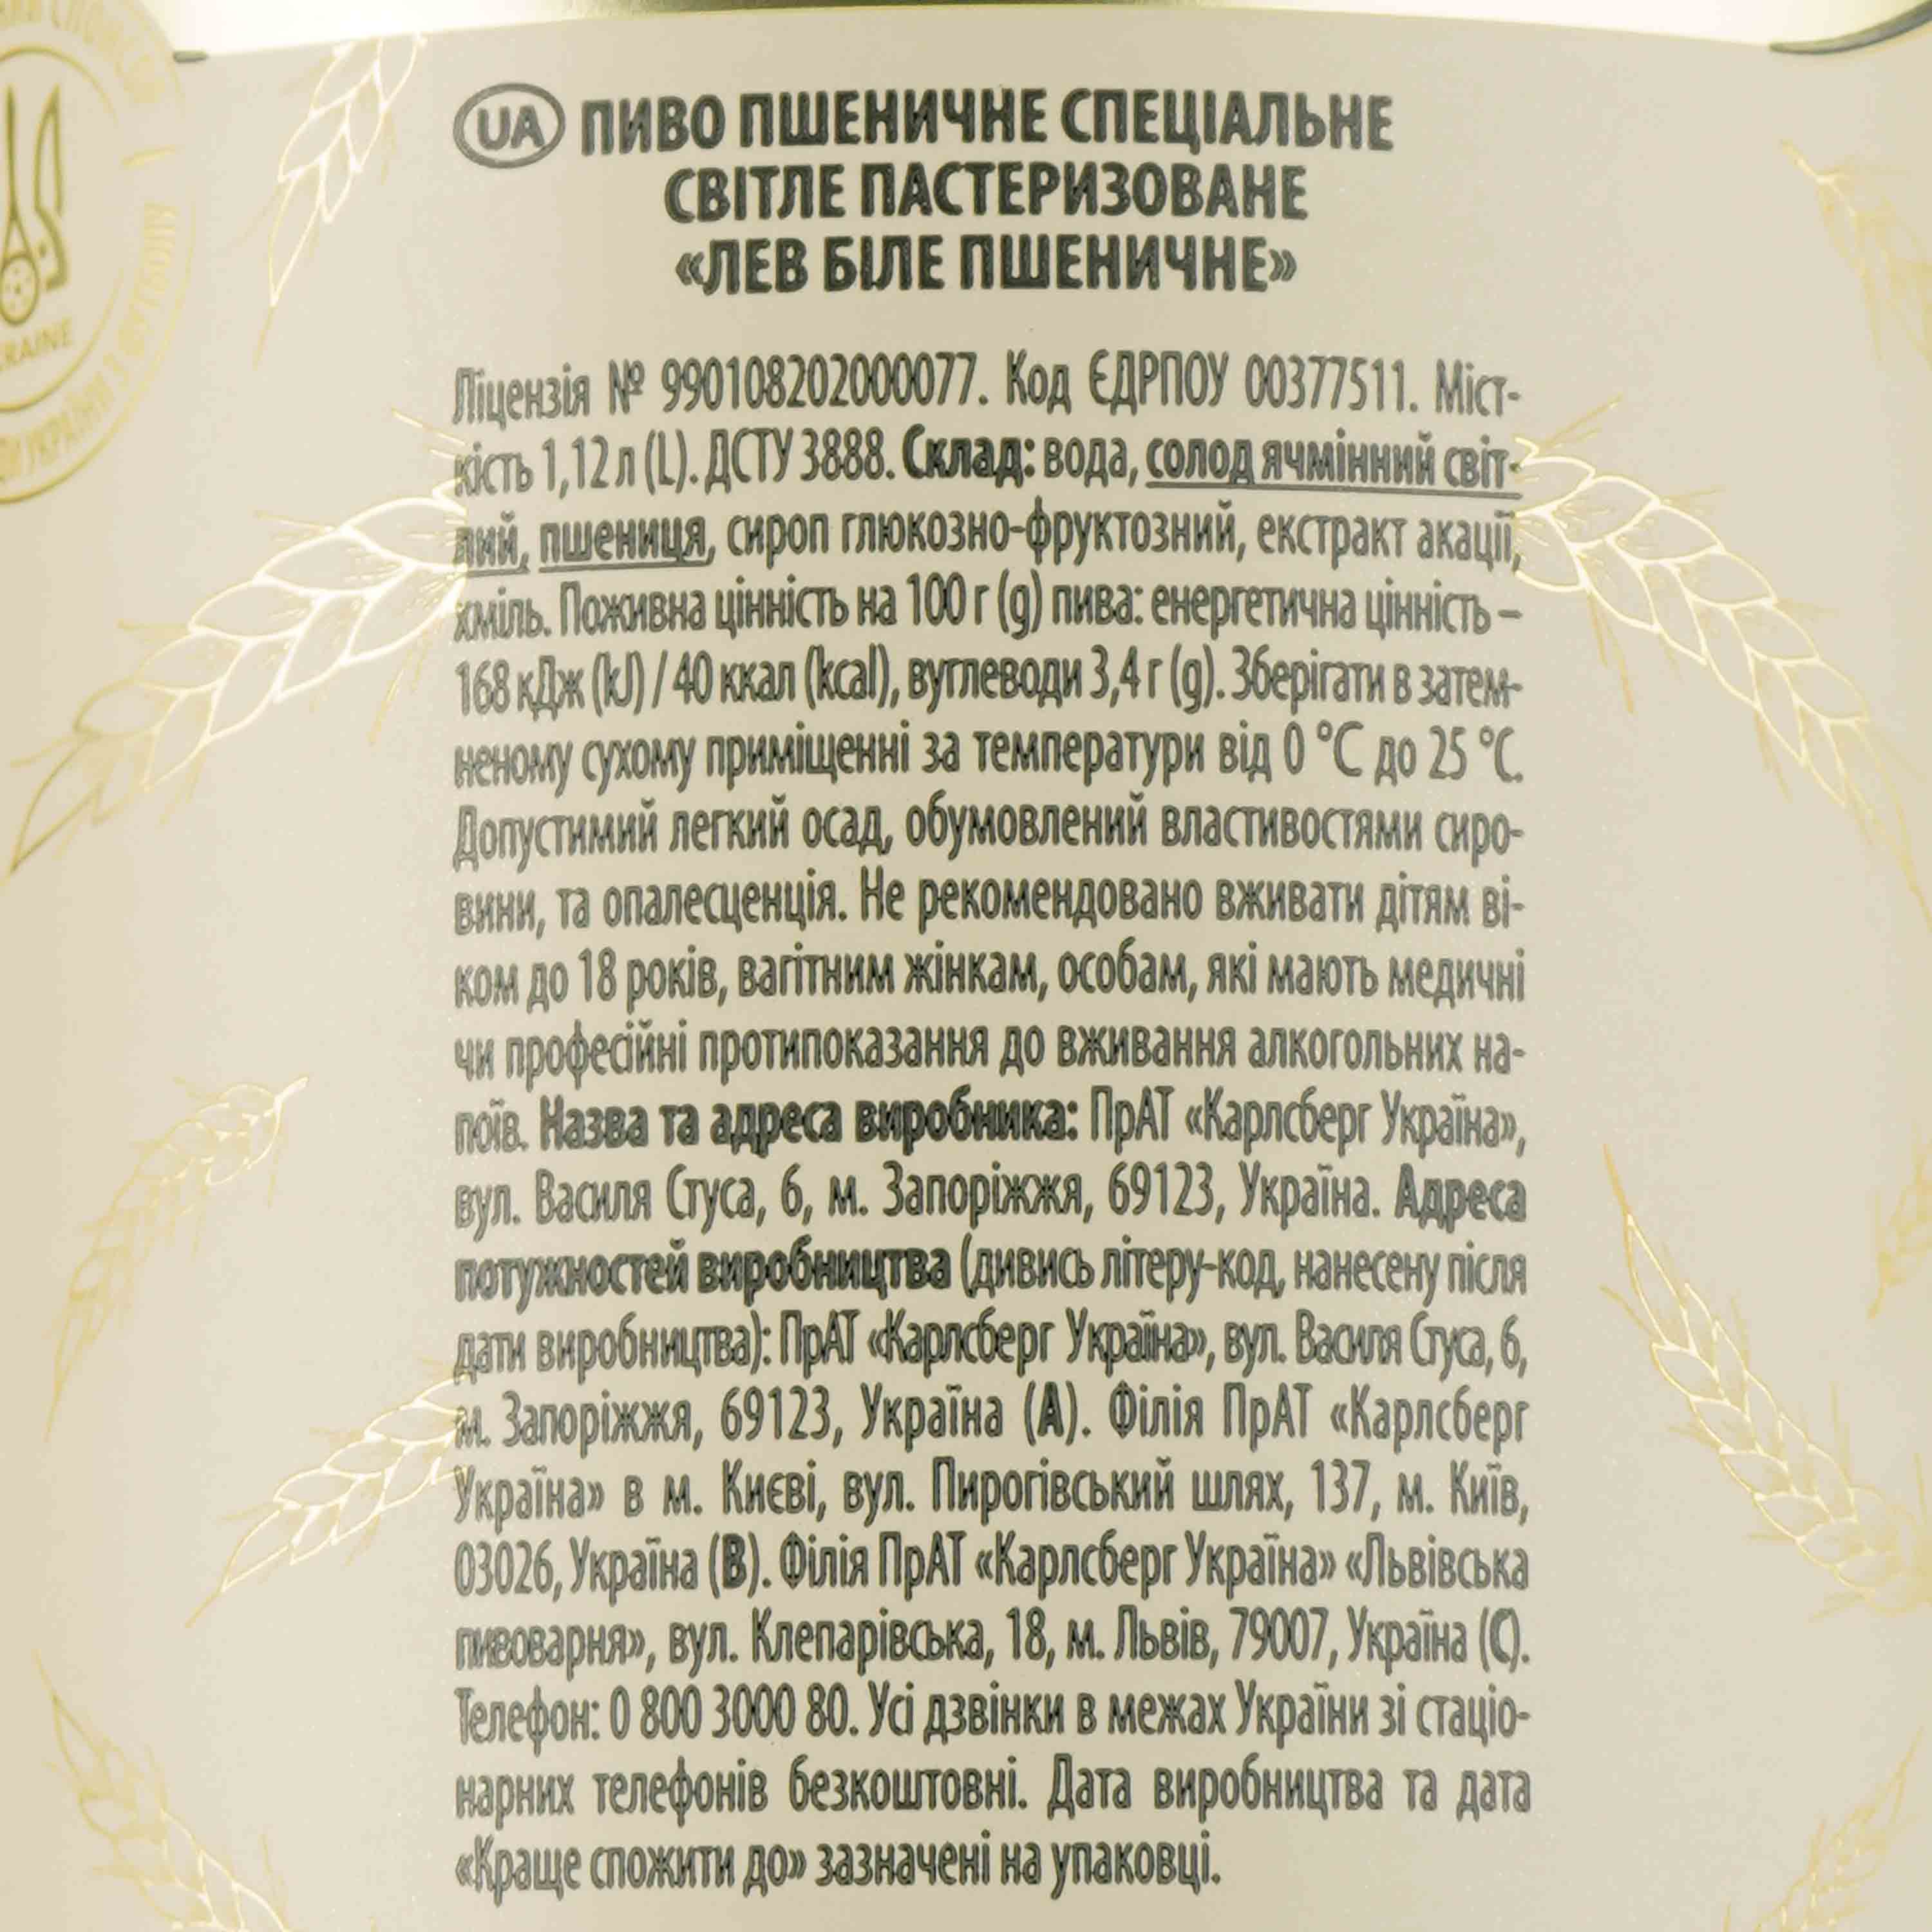 Пиво Львівське Лев белое, фильтрованное, 4,8%, 1,12 л - фото 3